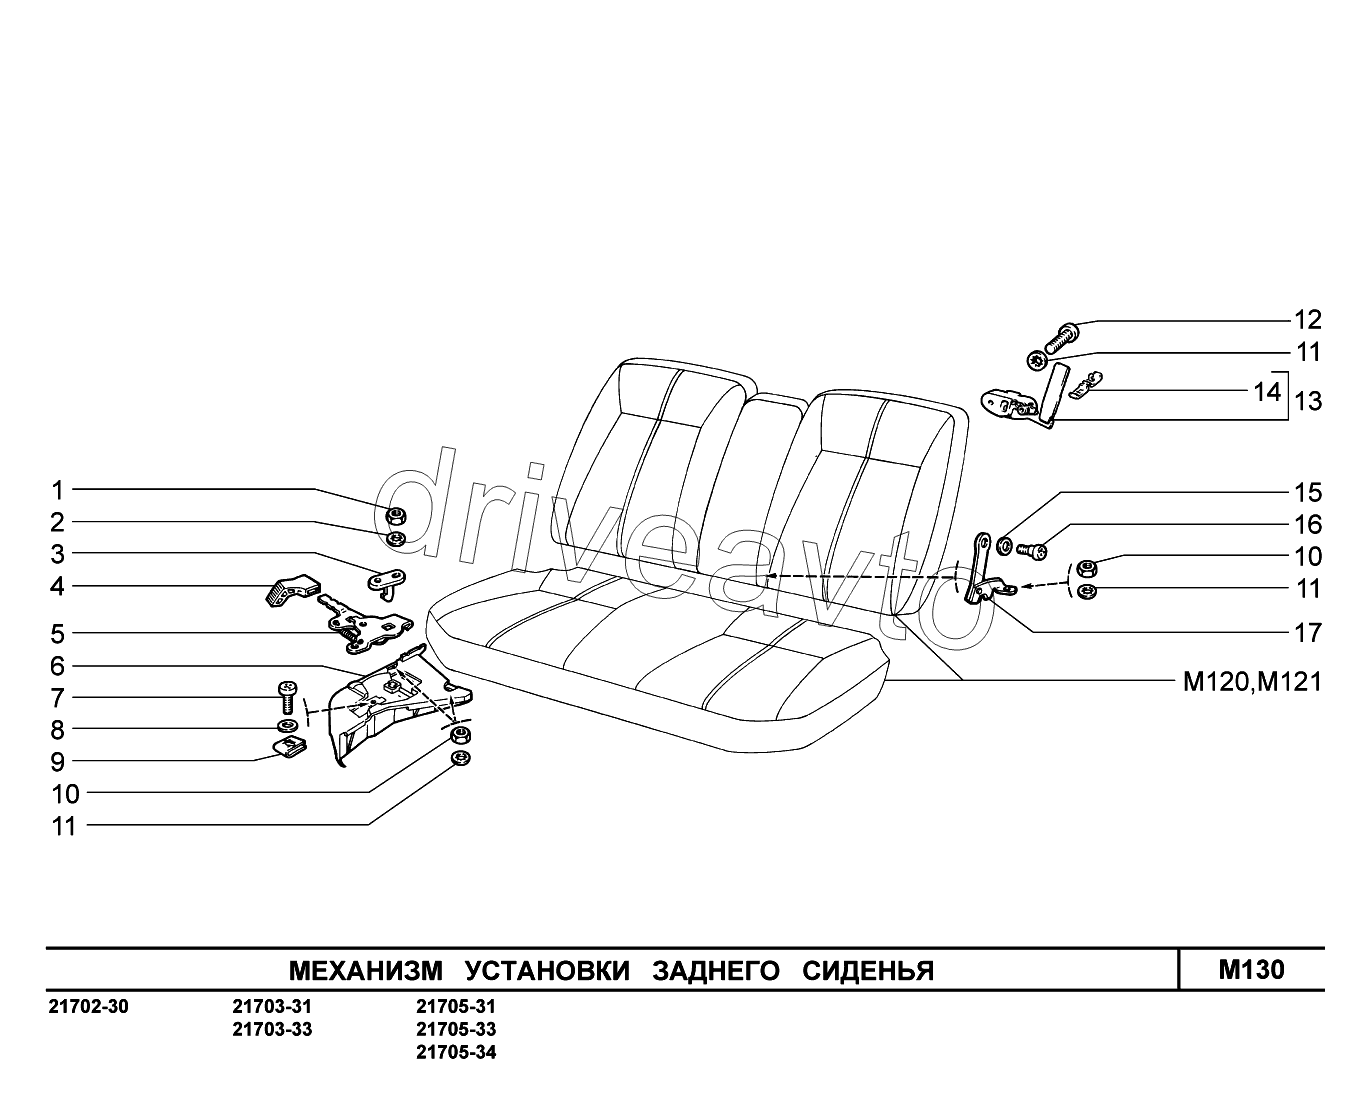 M130. Механизм установки заднего сиденья